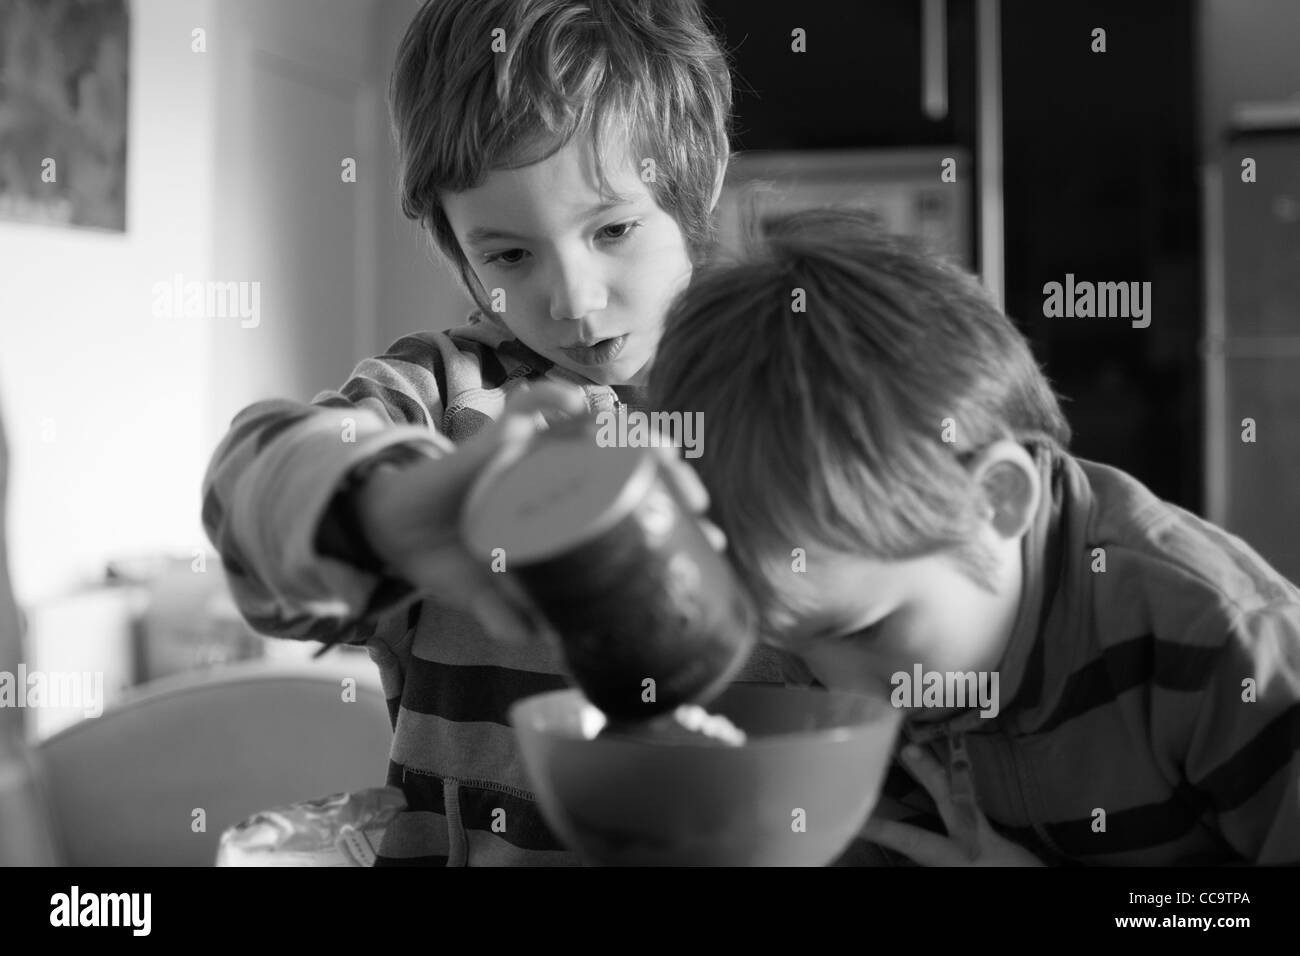 Deux enfants la confection d'un gâteau au chocolat ensemble Banque D'Images